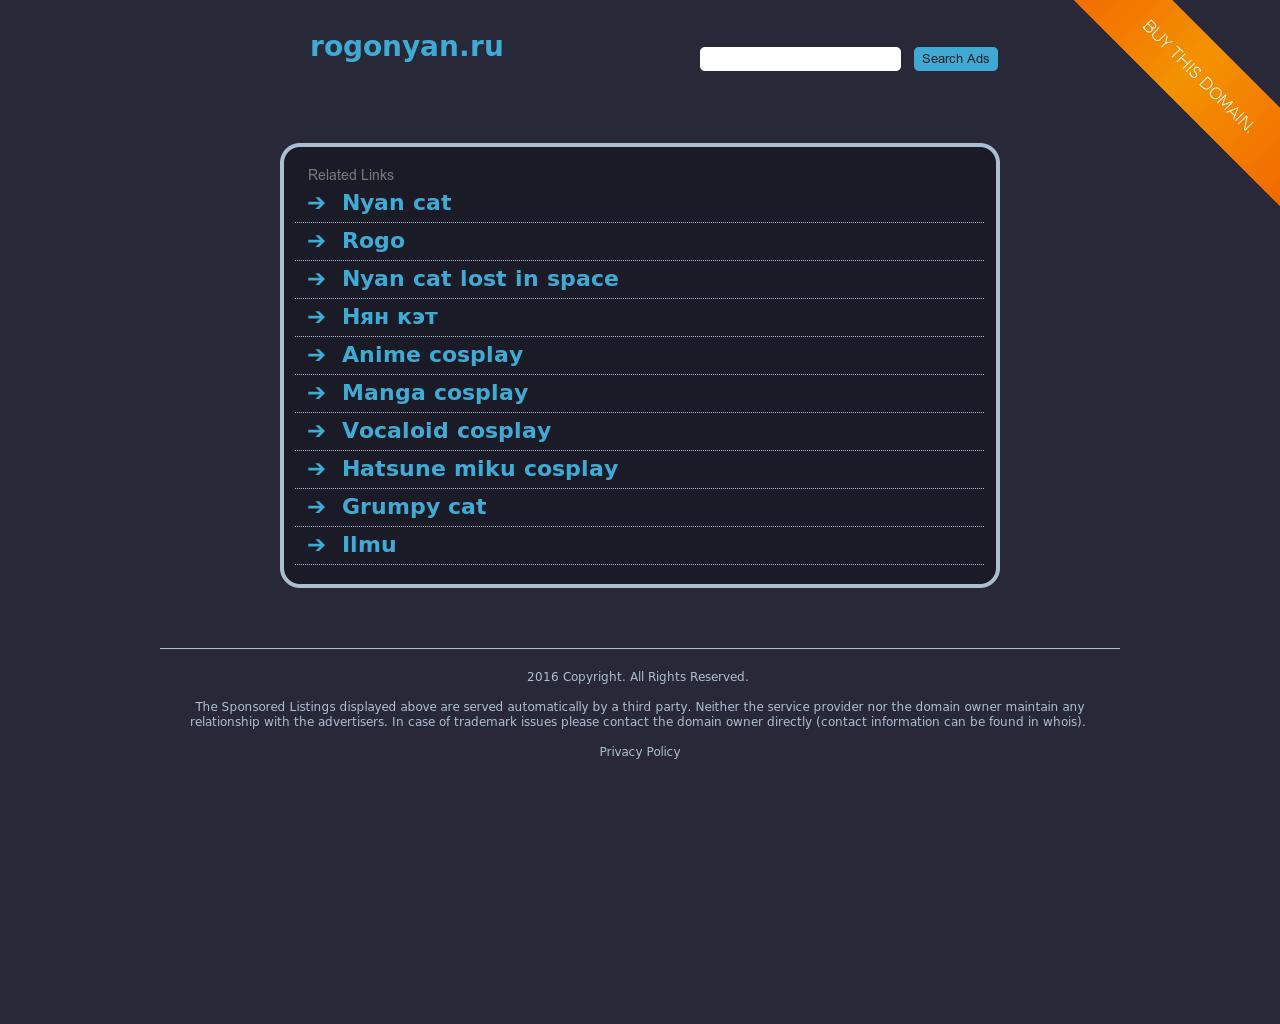 Изображение сайта rogonyan.ru в разрешении 1280x1024